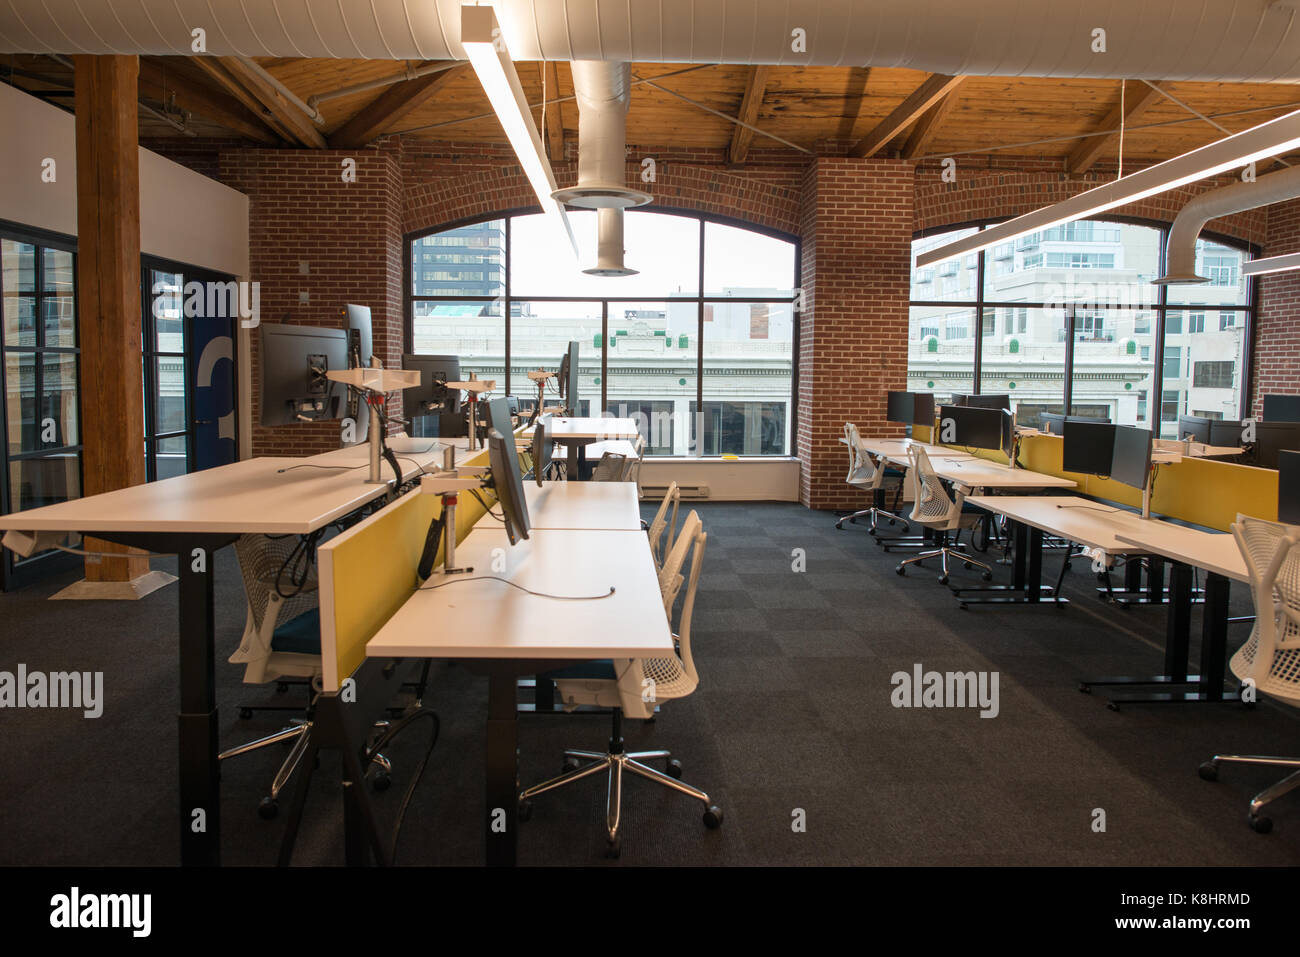 Trendigen, modernen offenen Konzept loft Büro mit großen Fenstern, Tageslicht und ein Layout Zusammenarbeit, Kreativität und Innovation zu fördern Stockfoto